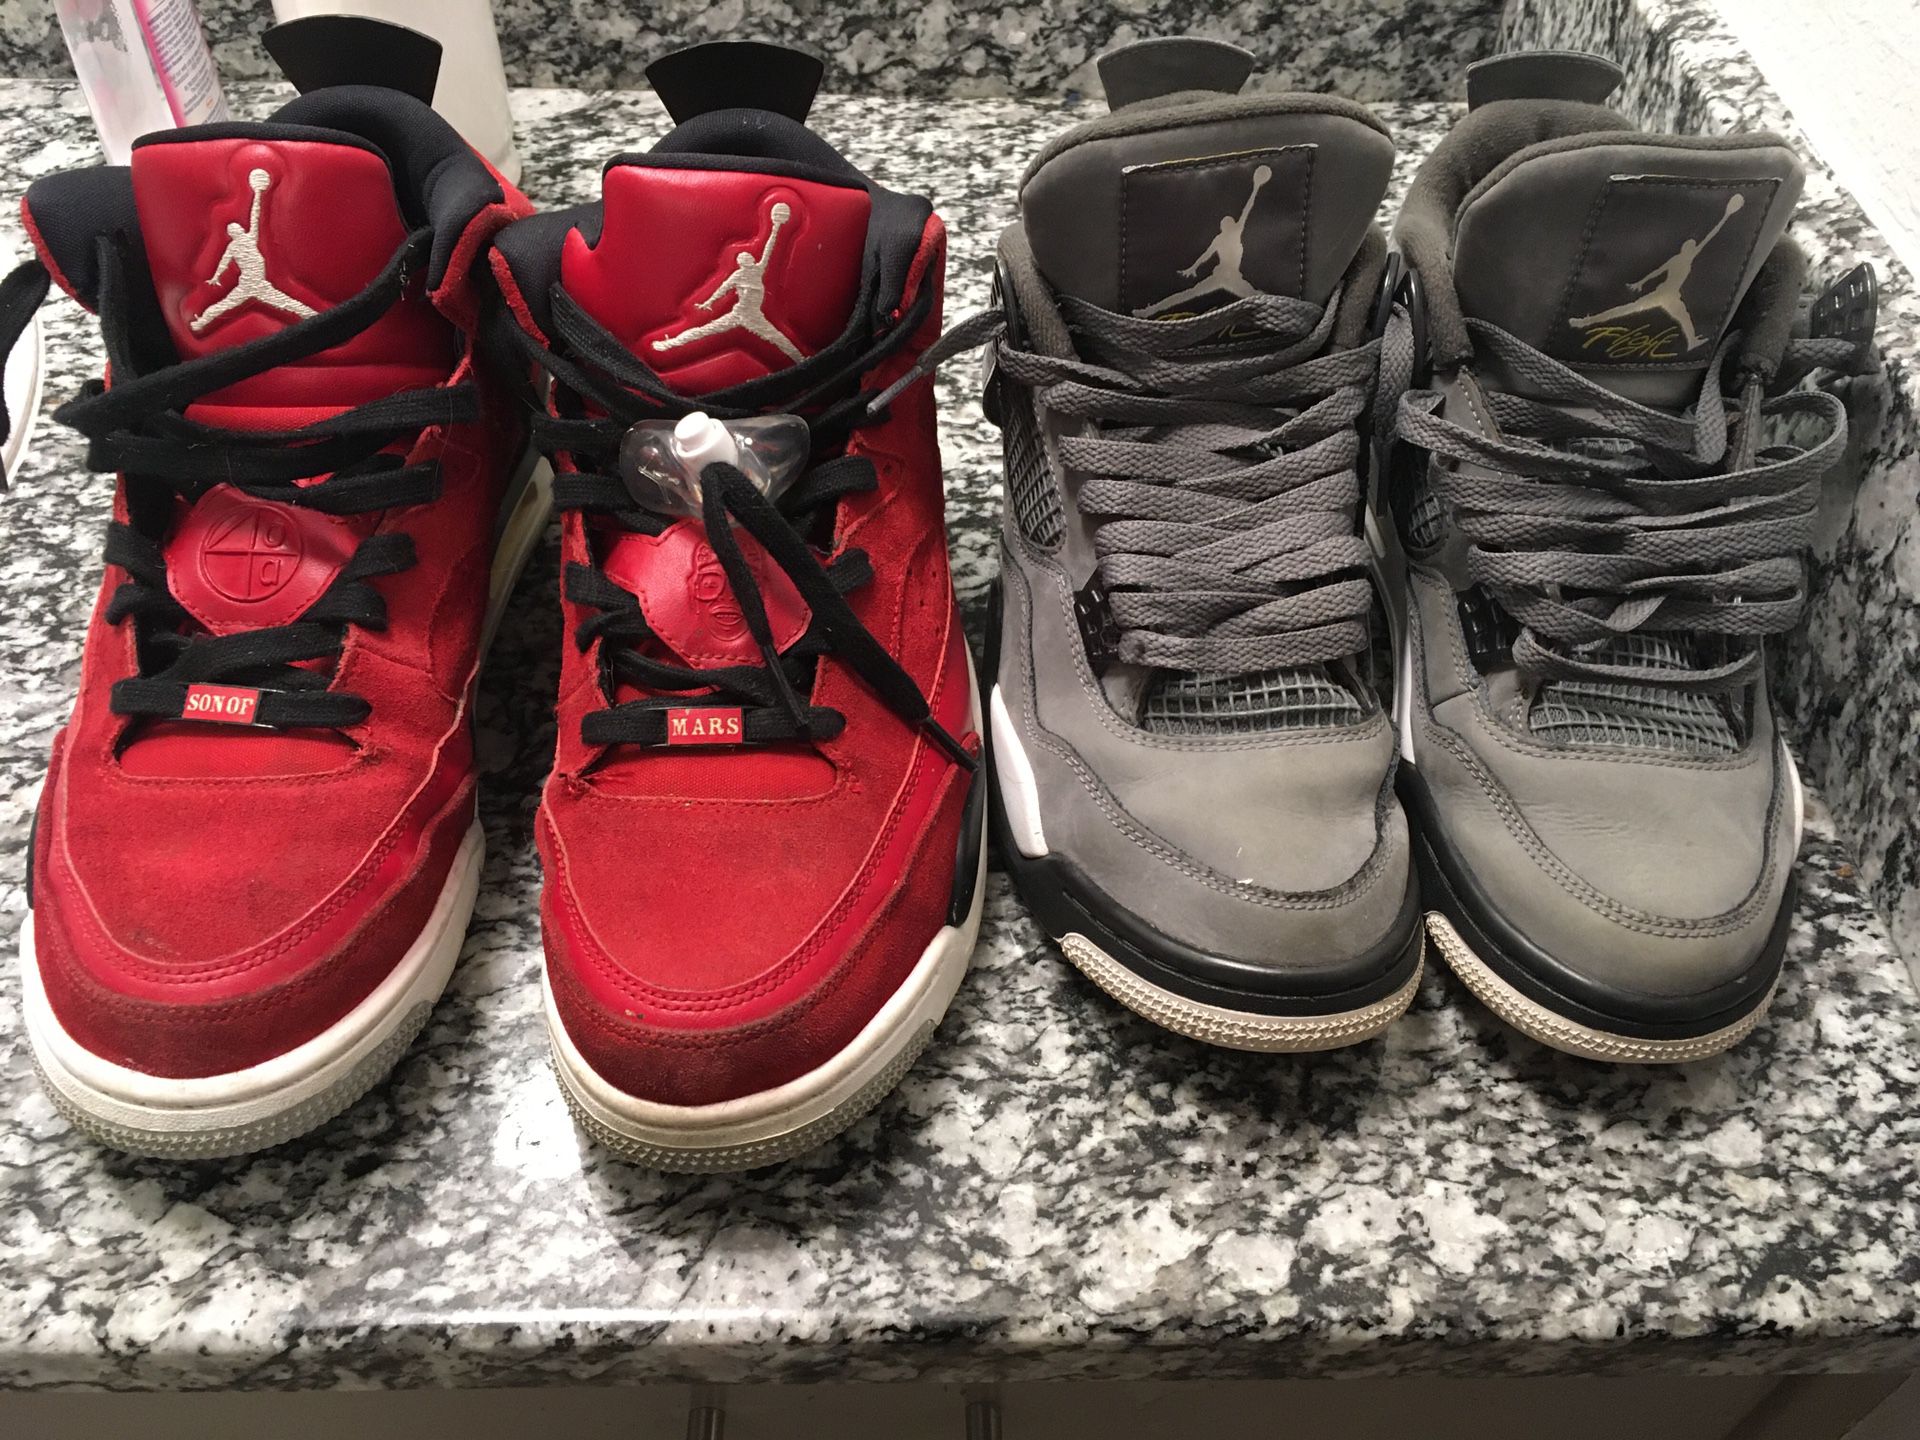 2 pairs of Jordan’s